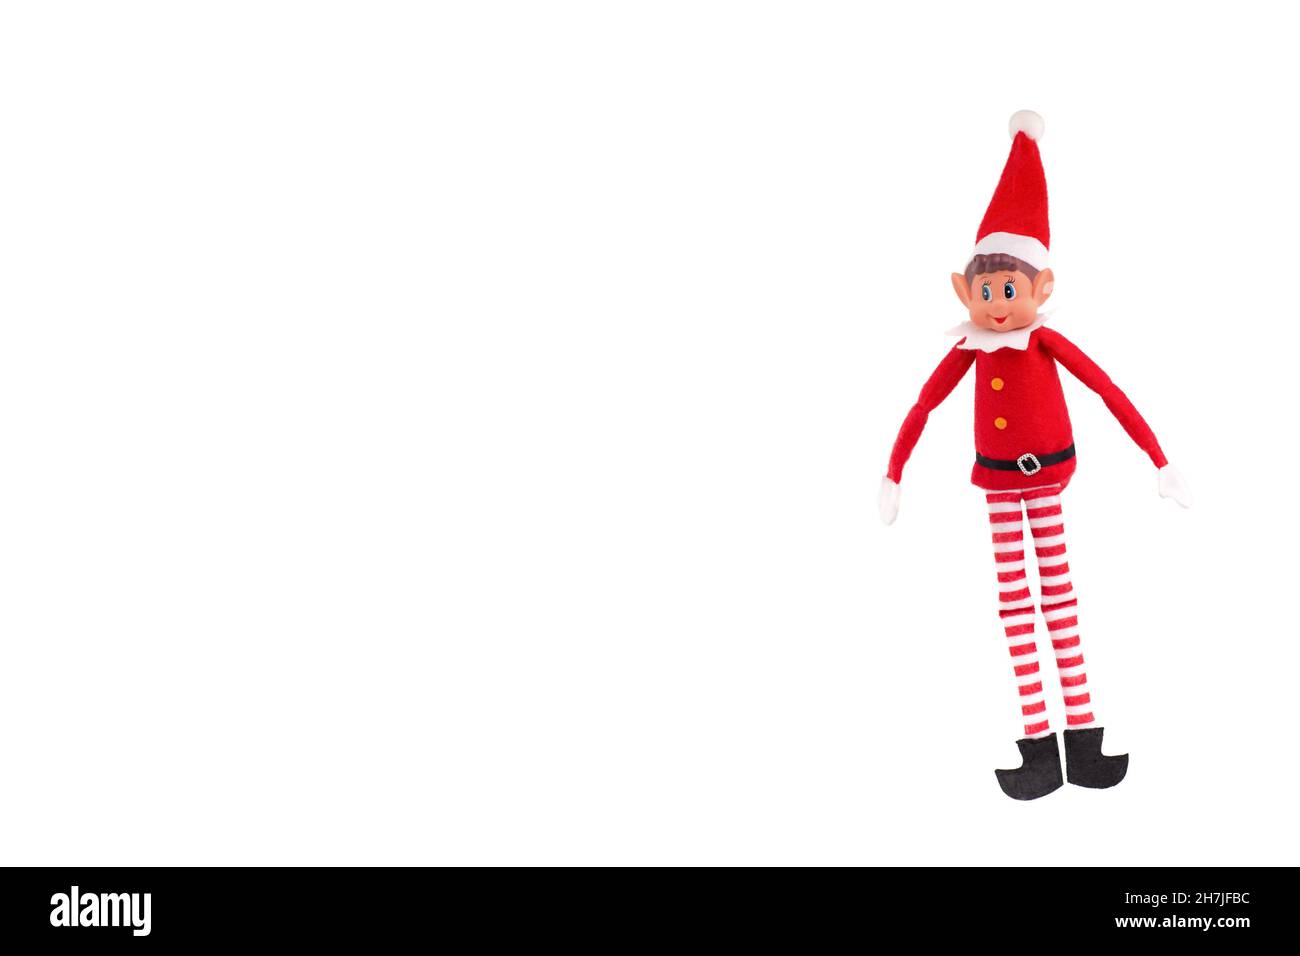 Giocattolo Elf di Natale su sfondo bianco isolato con spazio per la copia. Lo spirito di Natale, la tradizione della mensola di Natale. Foto Stock